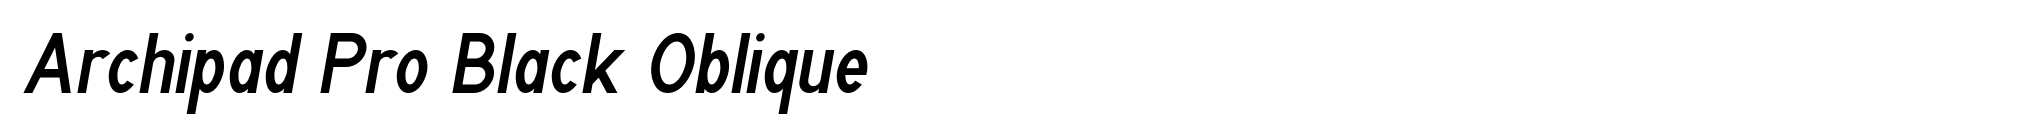 Archipad Pro Black Oblique image